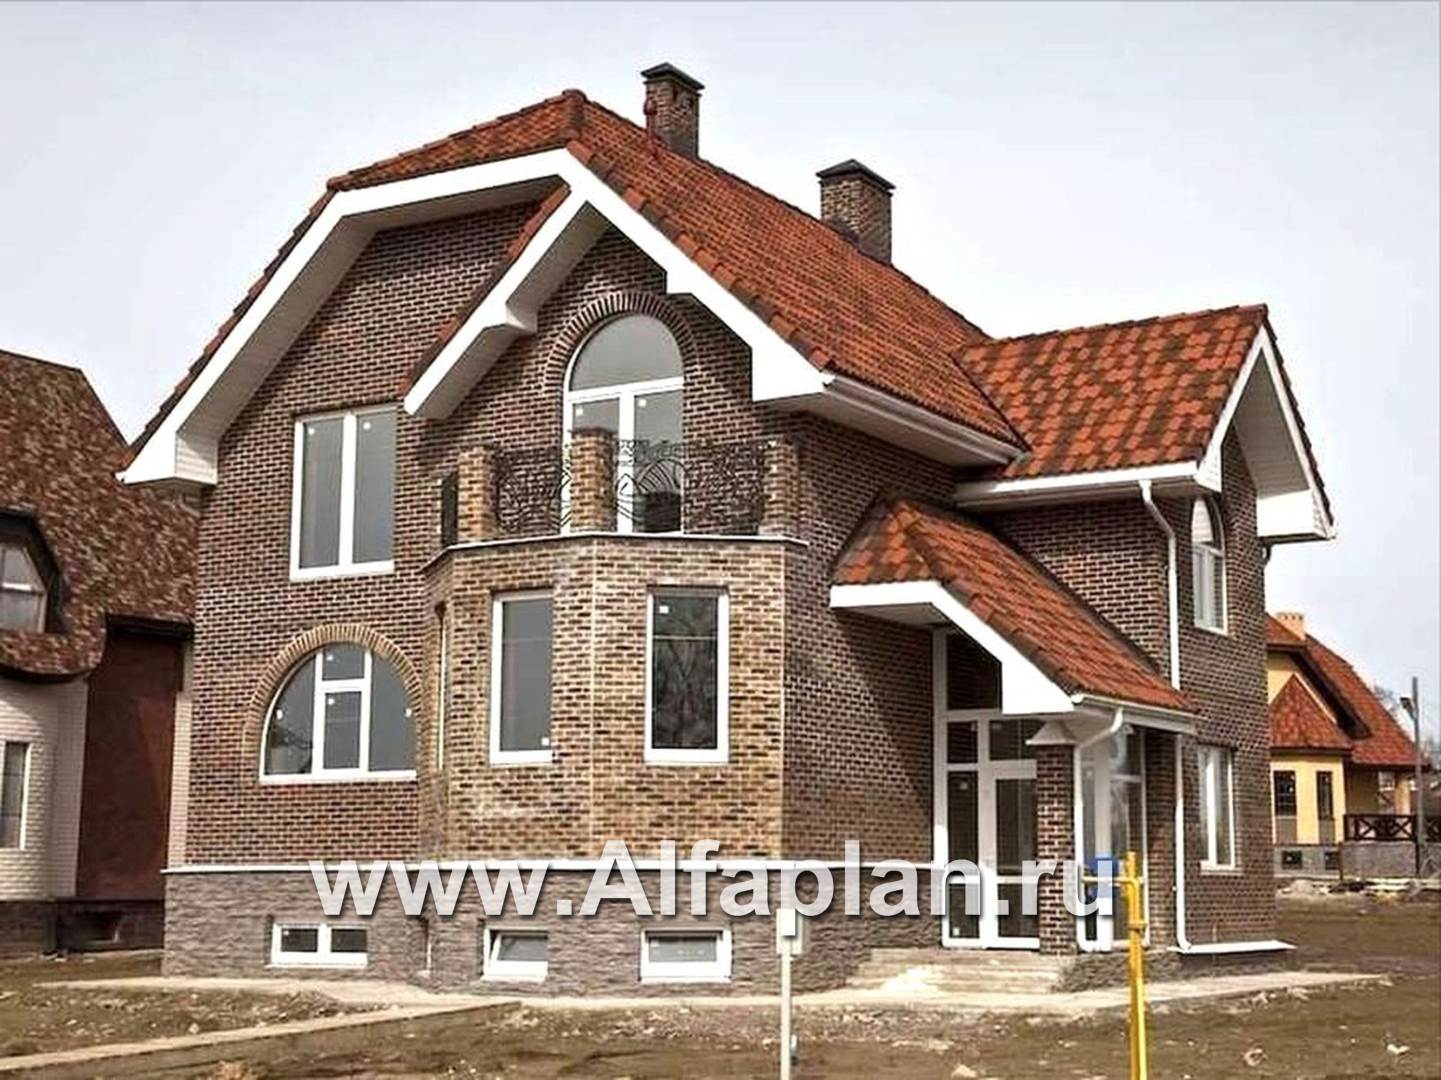 Проекты домов Альфаплан - «Лаура»- трехэтажный загородный дом с террасой - дополнительное изображение №1